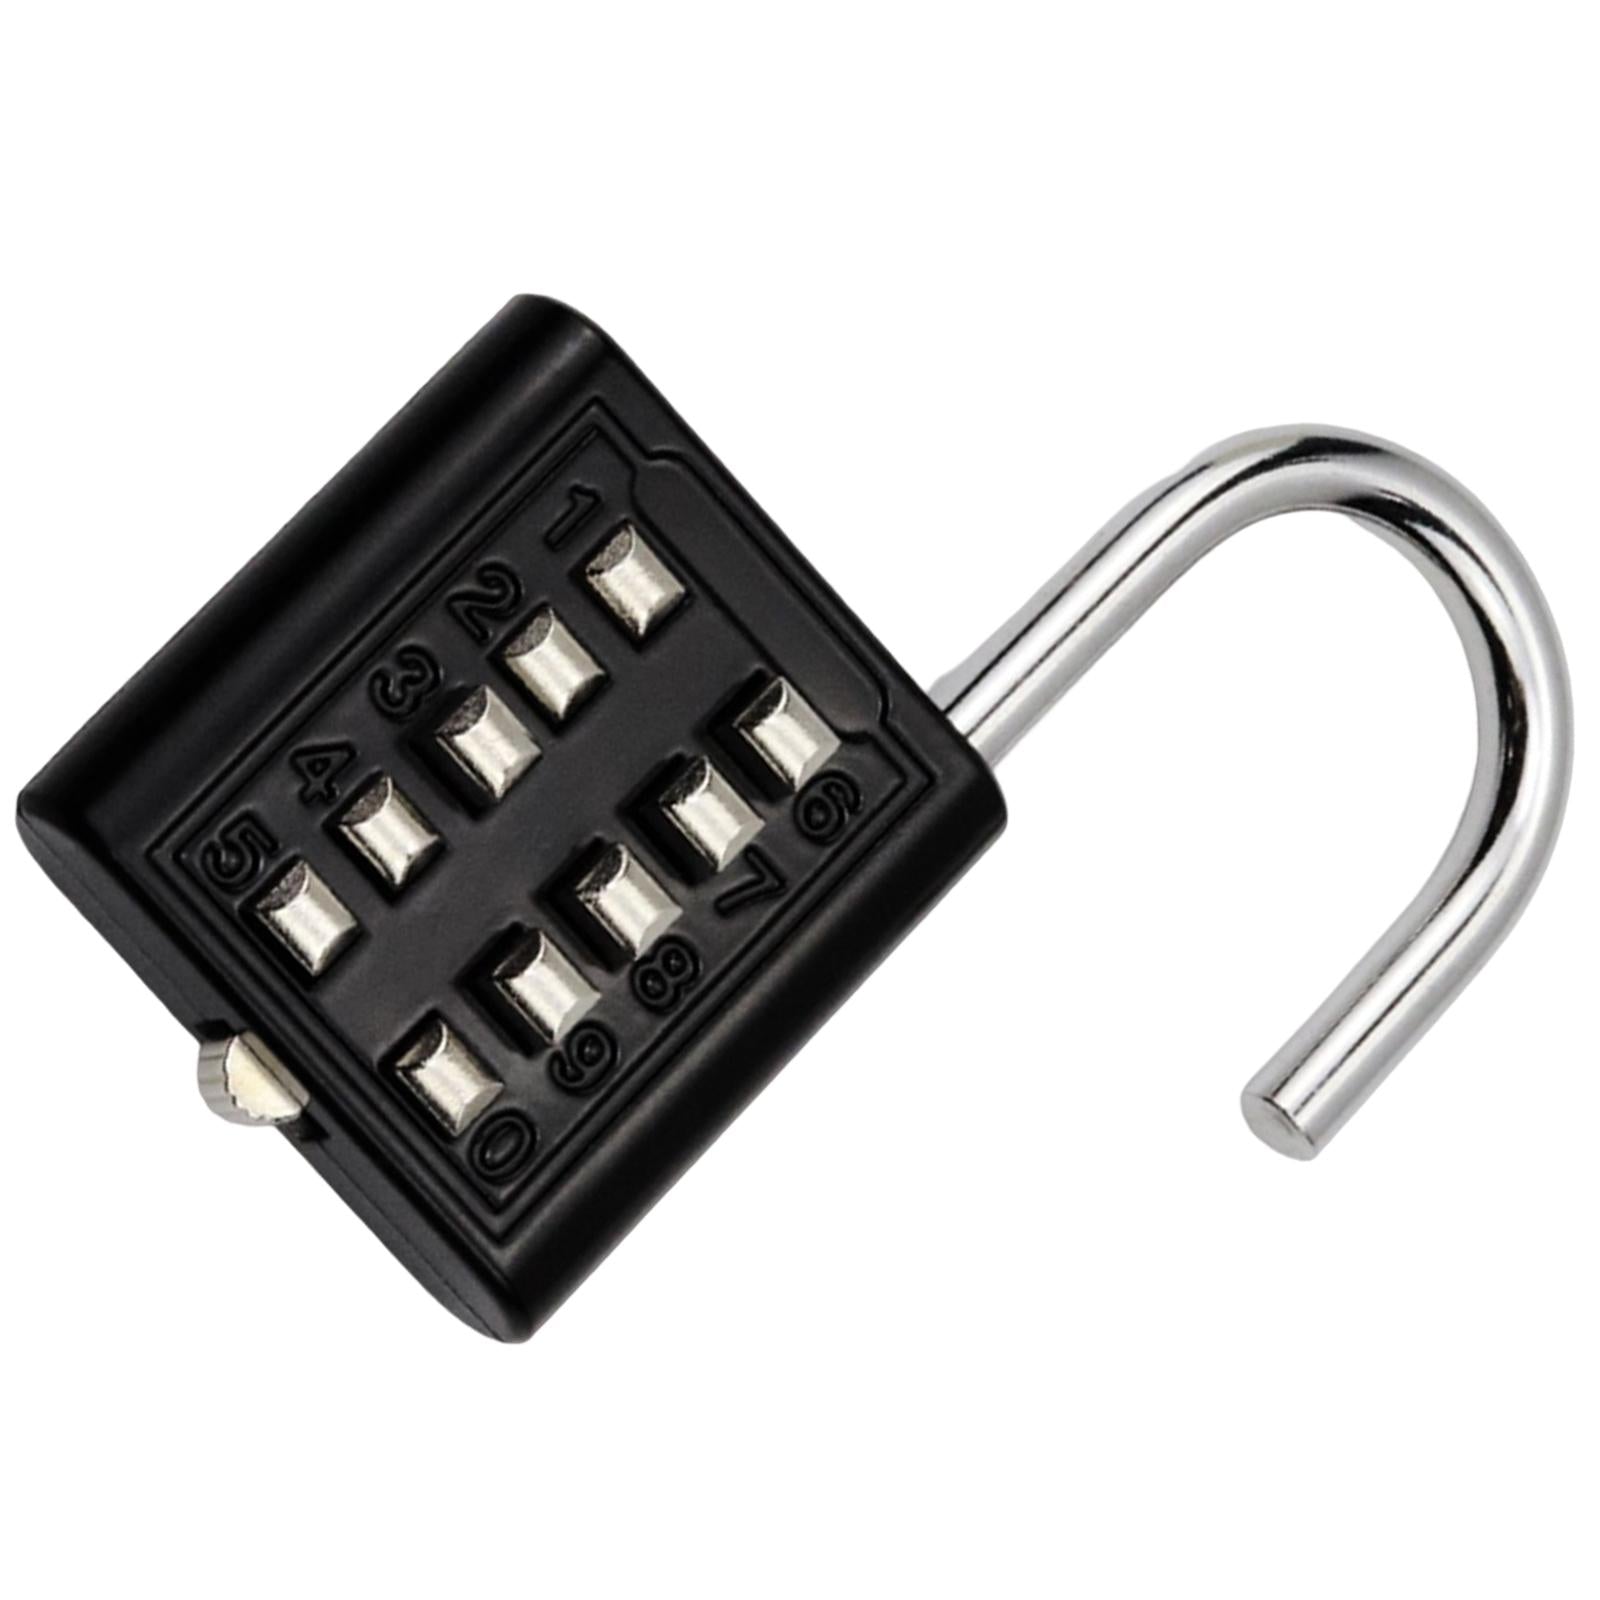 10 Digit Combination Padlock Lengthened Shackle locks for Cabinet Gate Fence Black